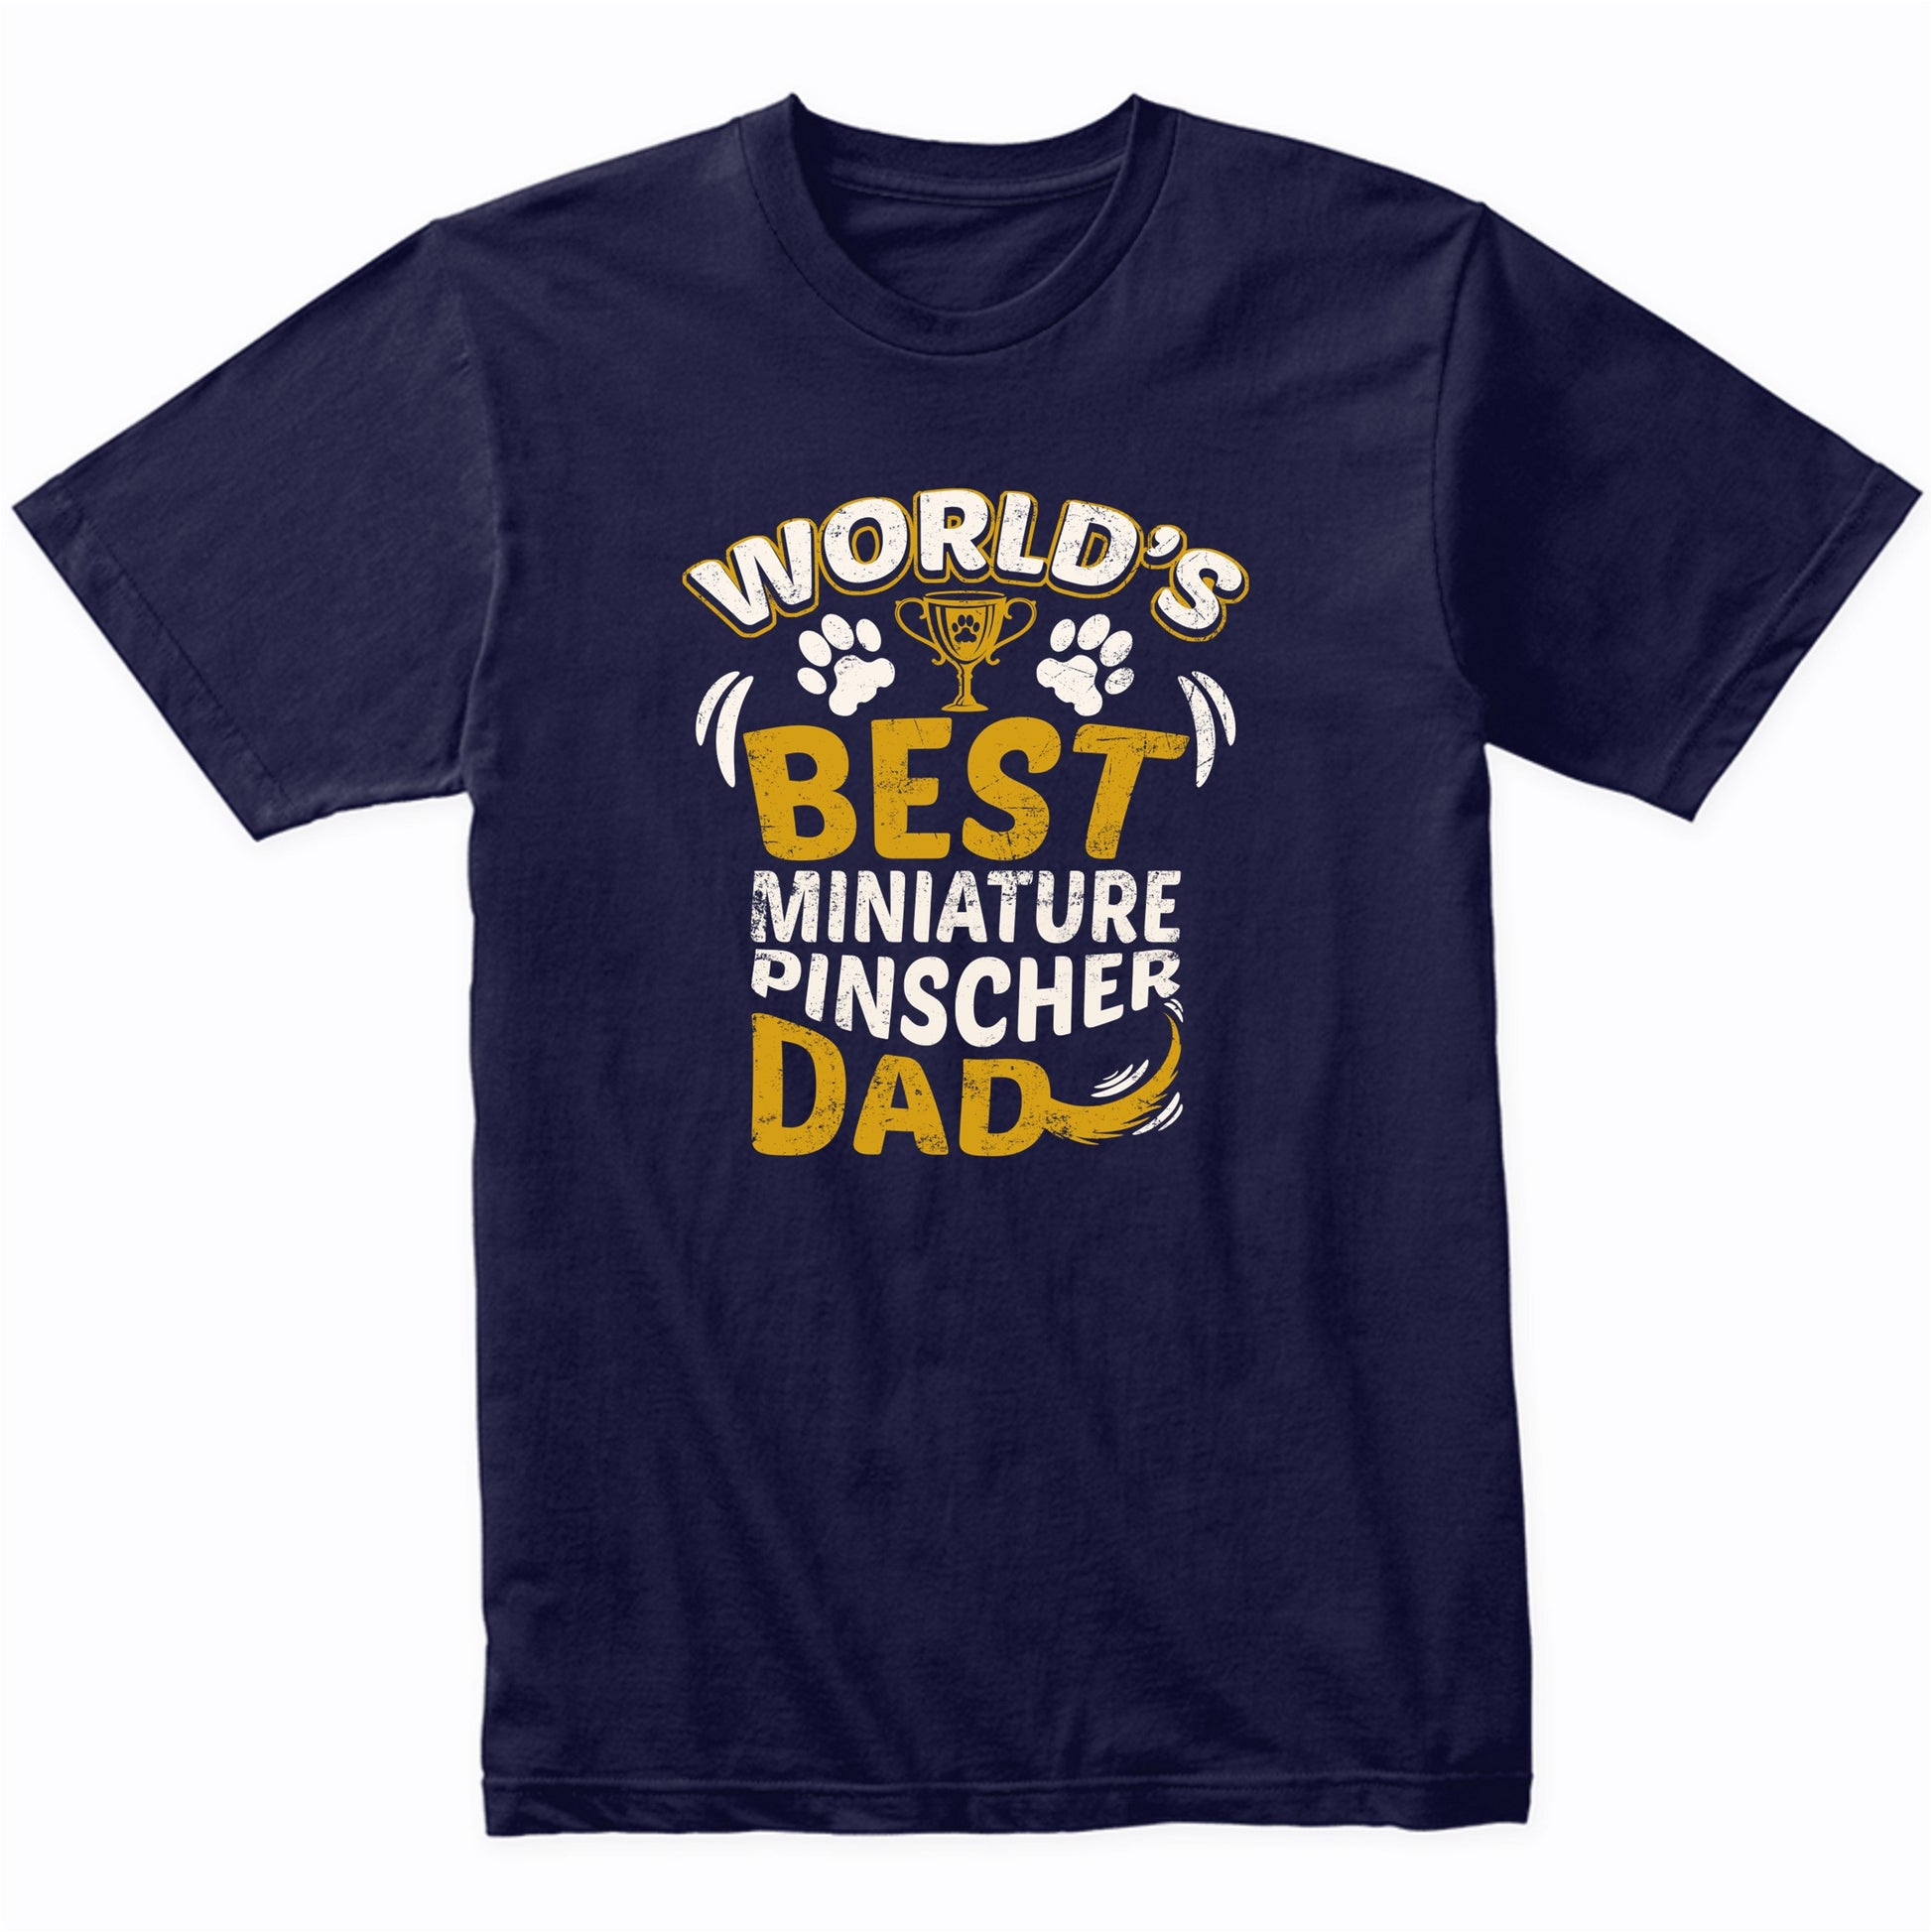 World's Best Miniature Pinscher Dad Graphic T-Shirt